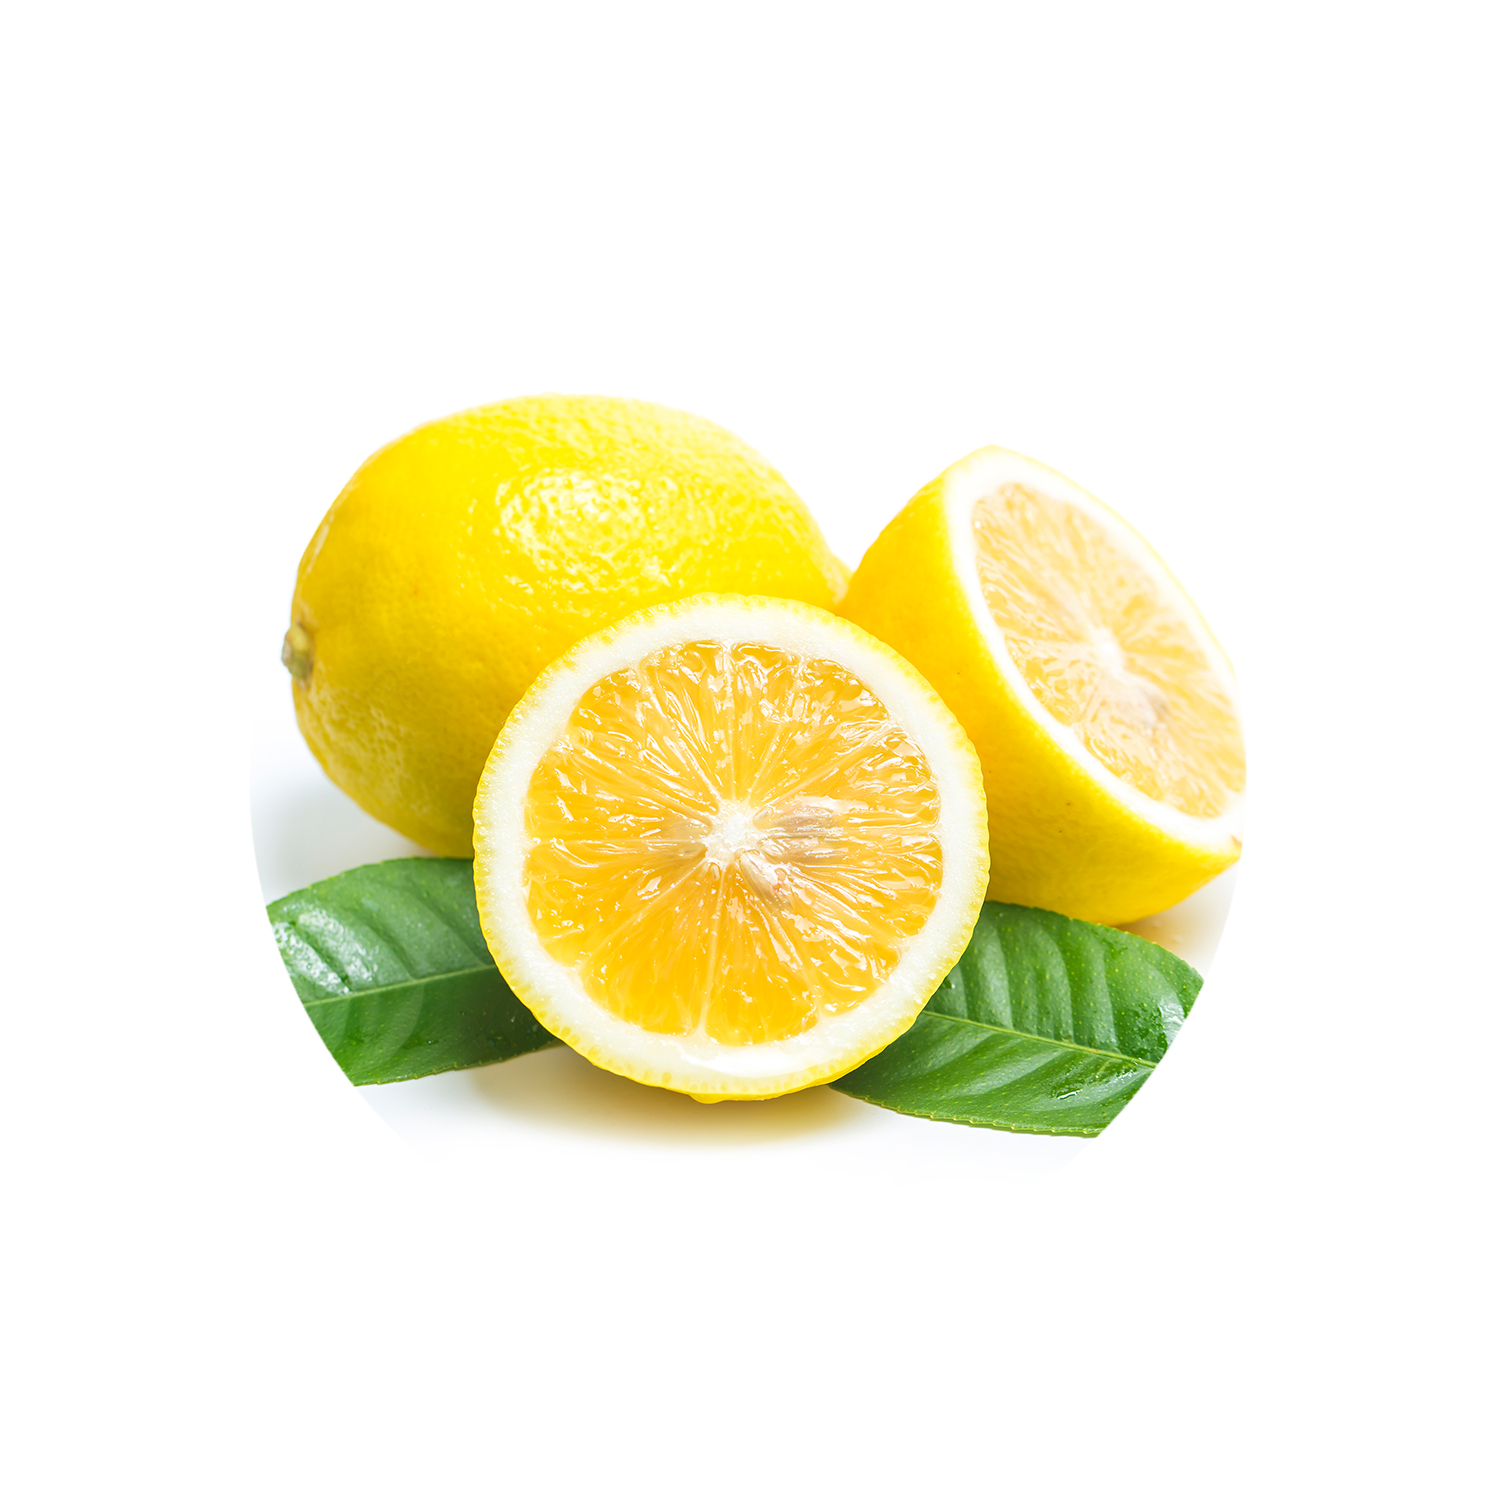 Lemon oil for hair